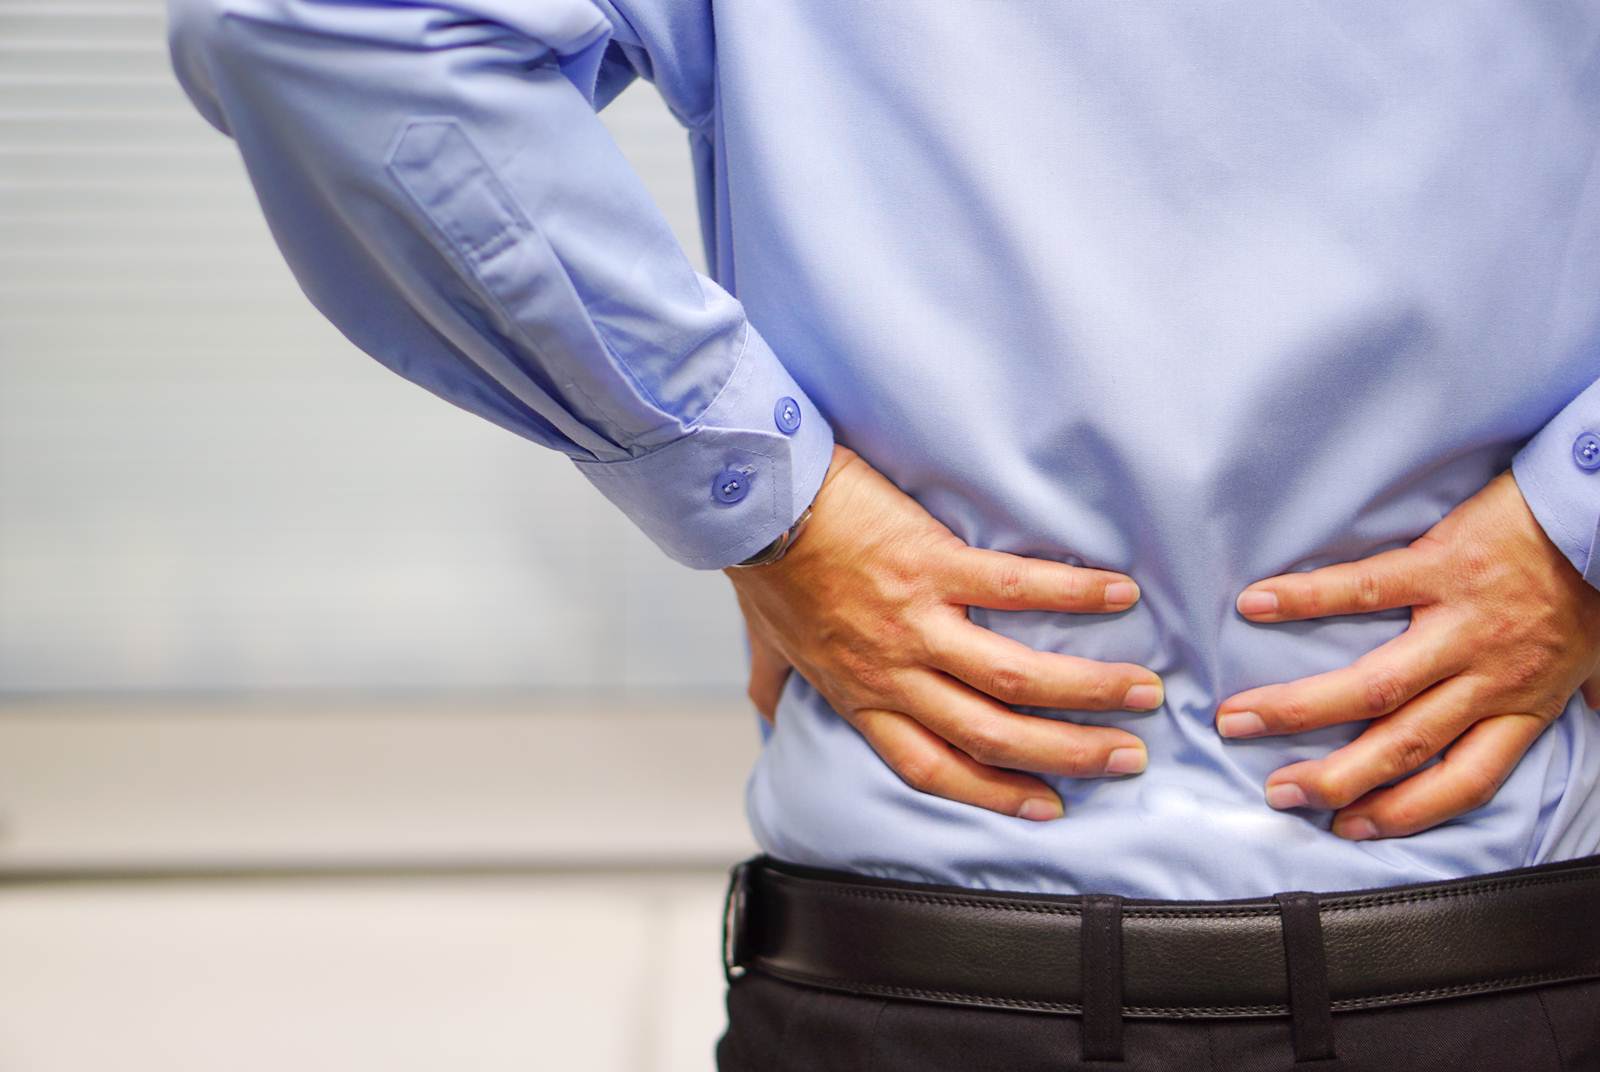 為什麼下背痛 6種可能原因 天下雜誌